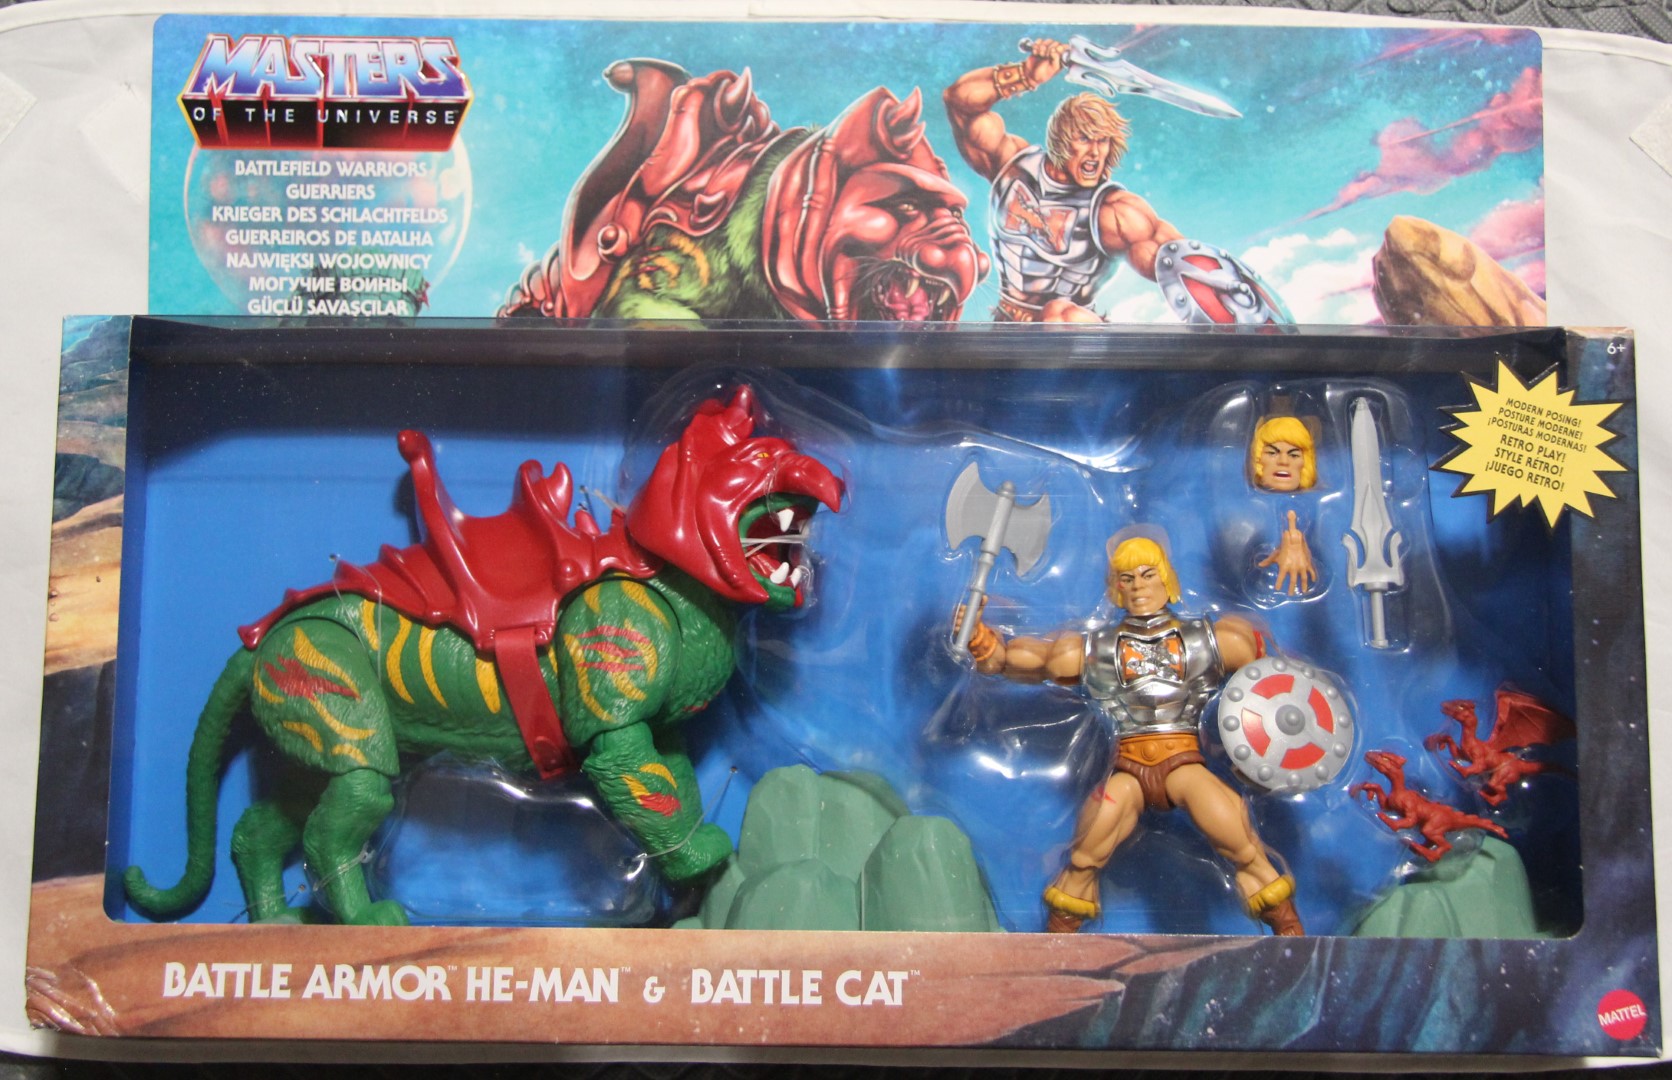 Battle Armor He-Man and Battle Cat (Battlefield Warriors)